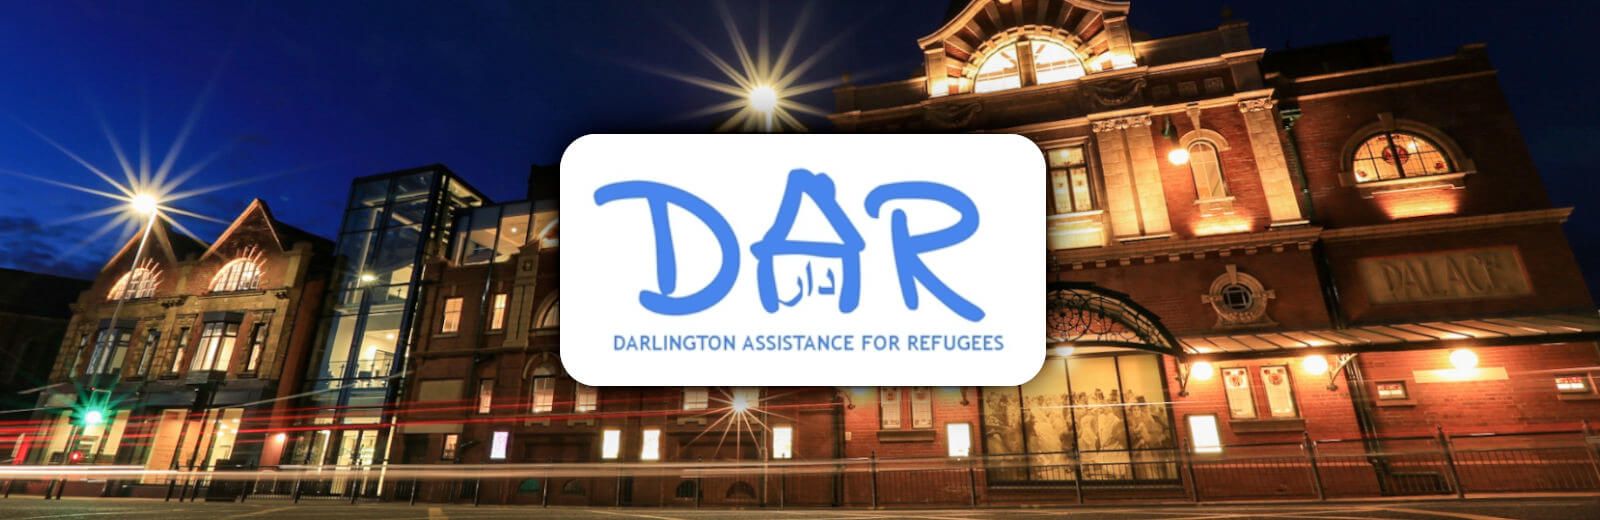 Darlington Assistance for Refugees